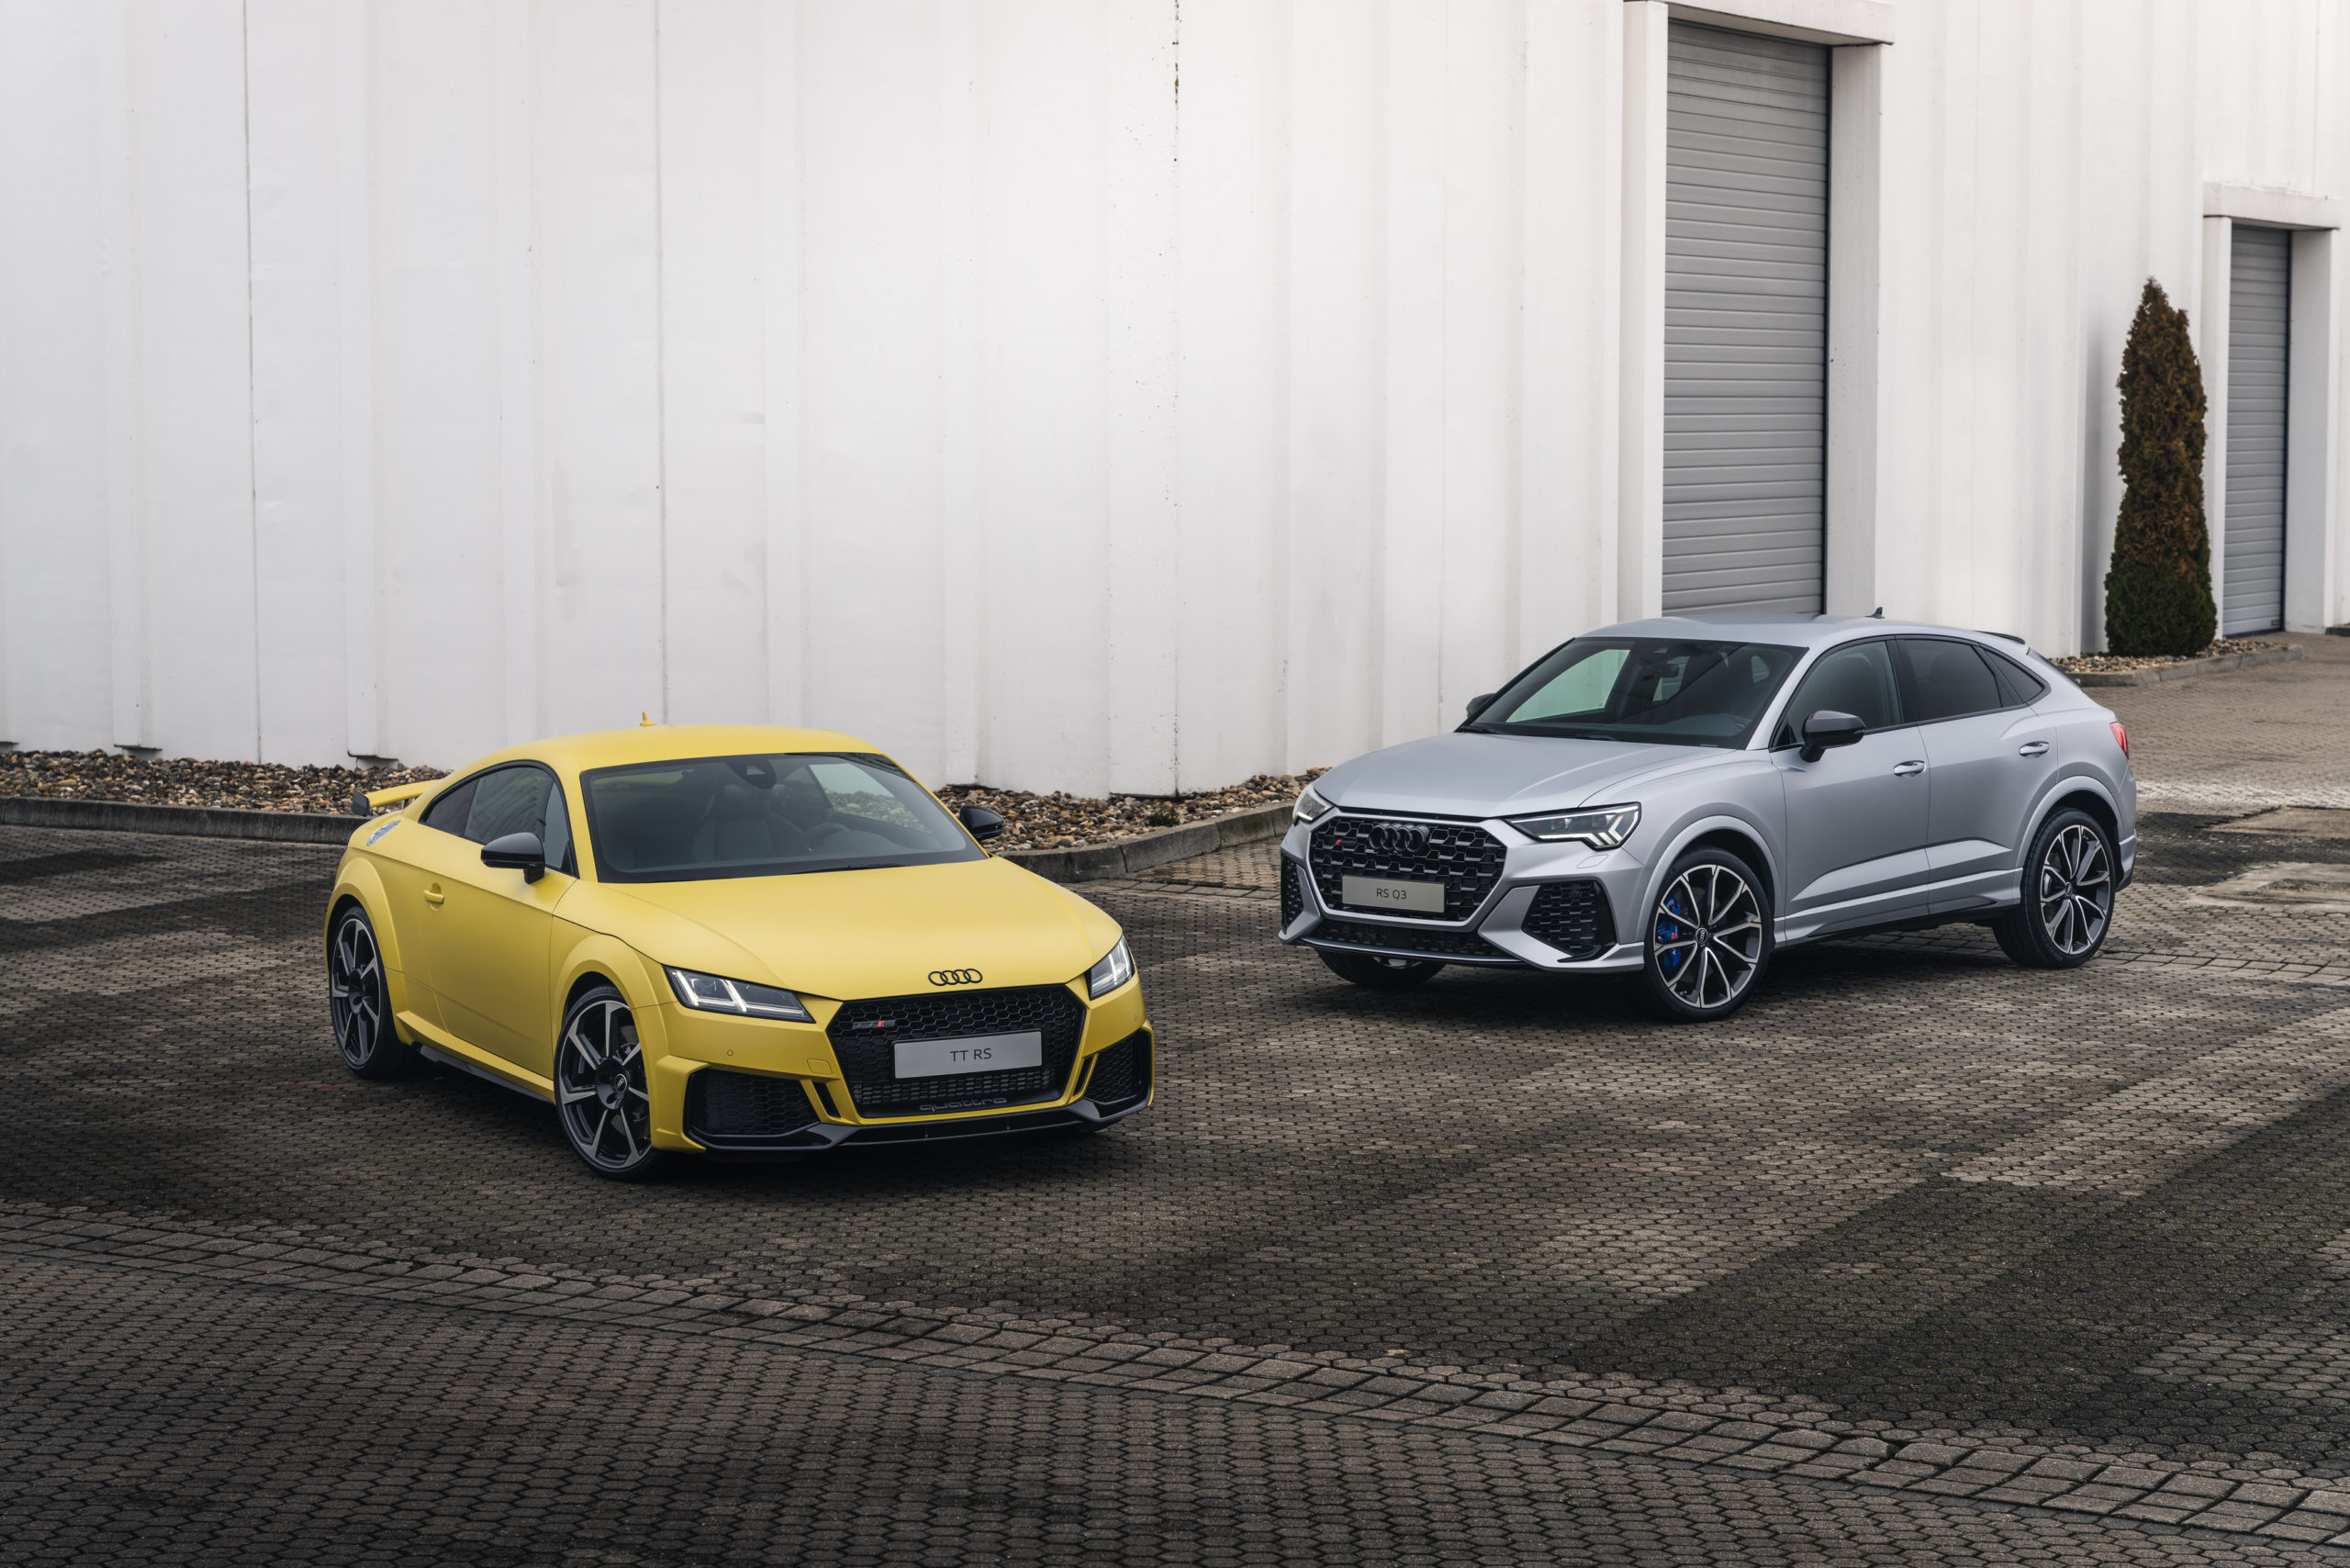 new colors for Audi TT, TTS, TT RS, Audi Q3, and RS Q3